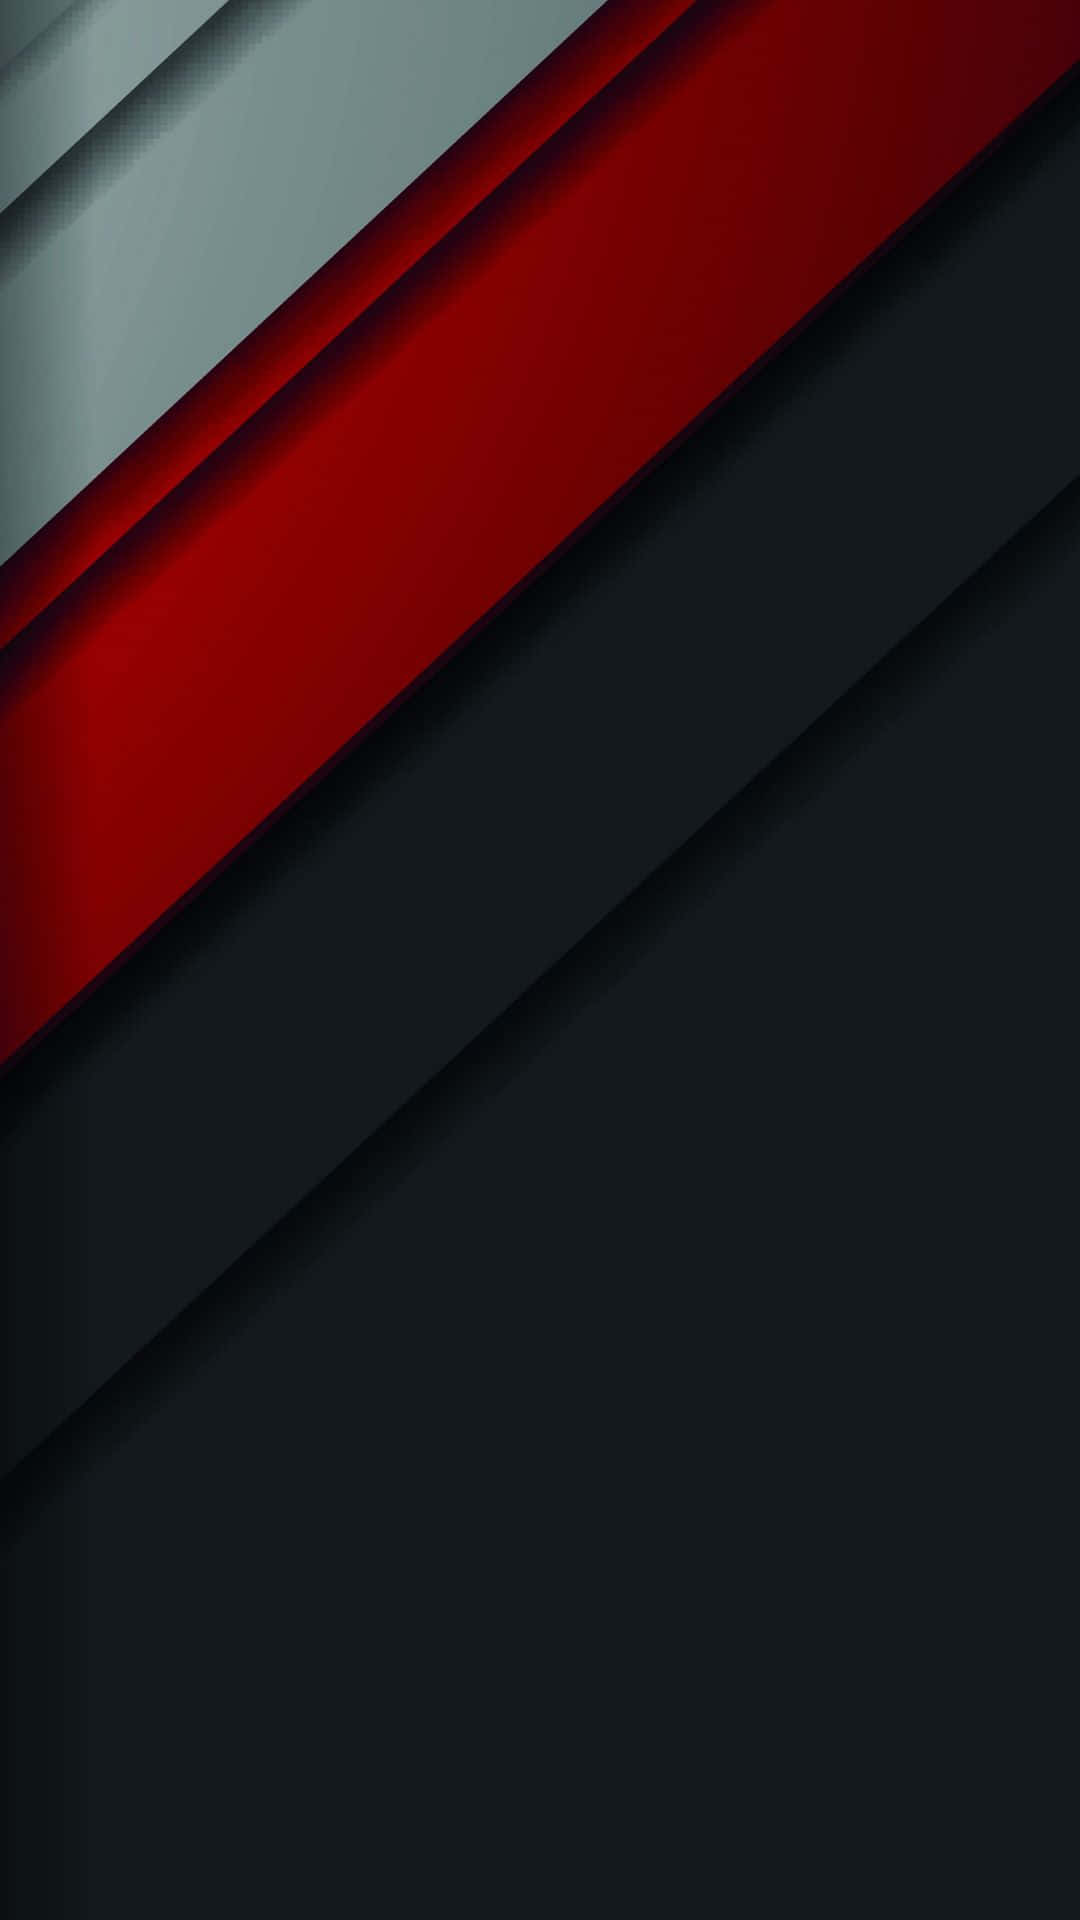 Einroter Und Schwarzer Hintergrund Mit Einem Roten Und Schwarzen Streifen. Wallpaper